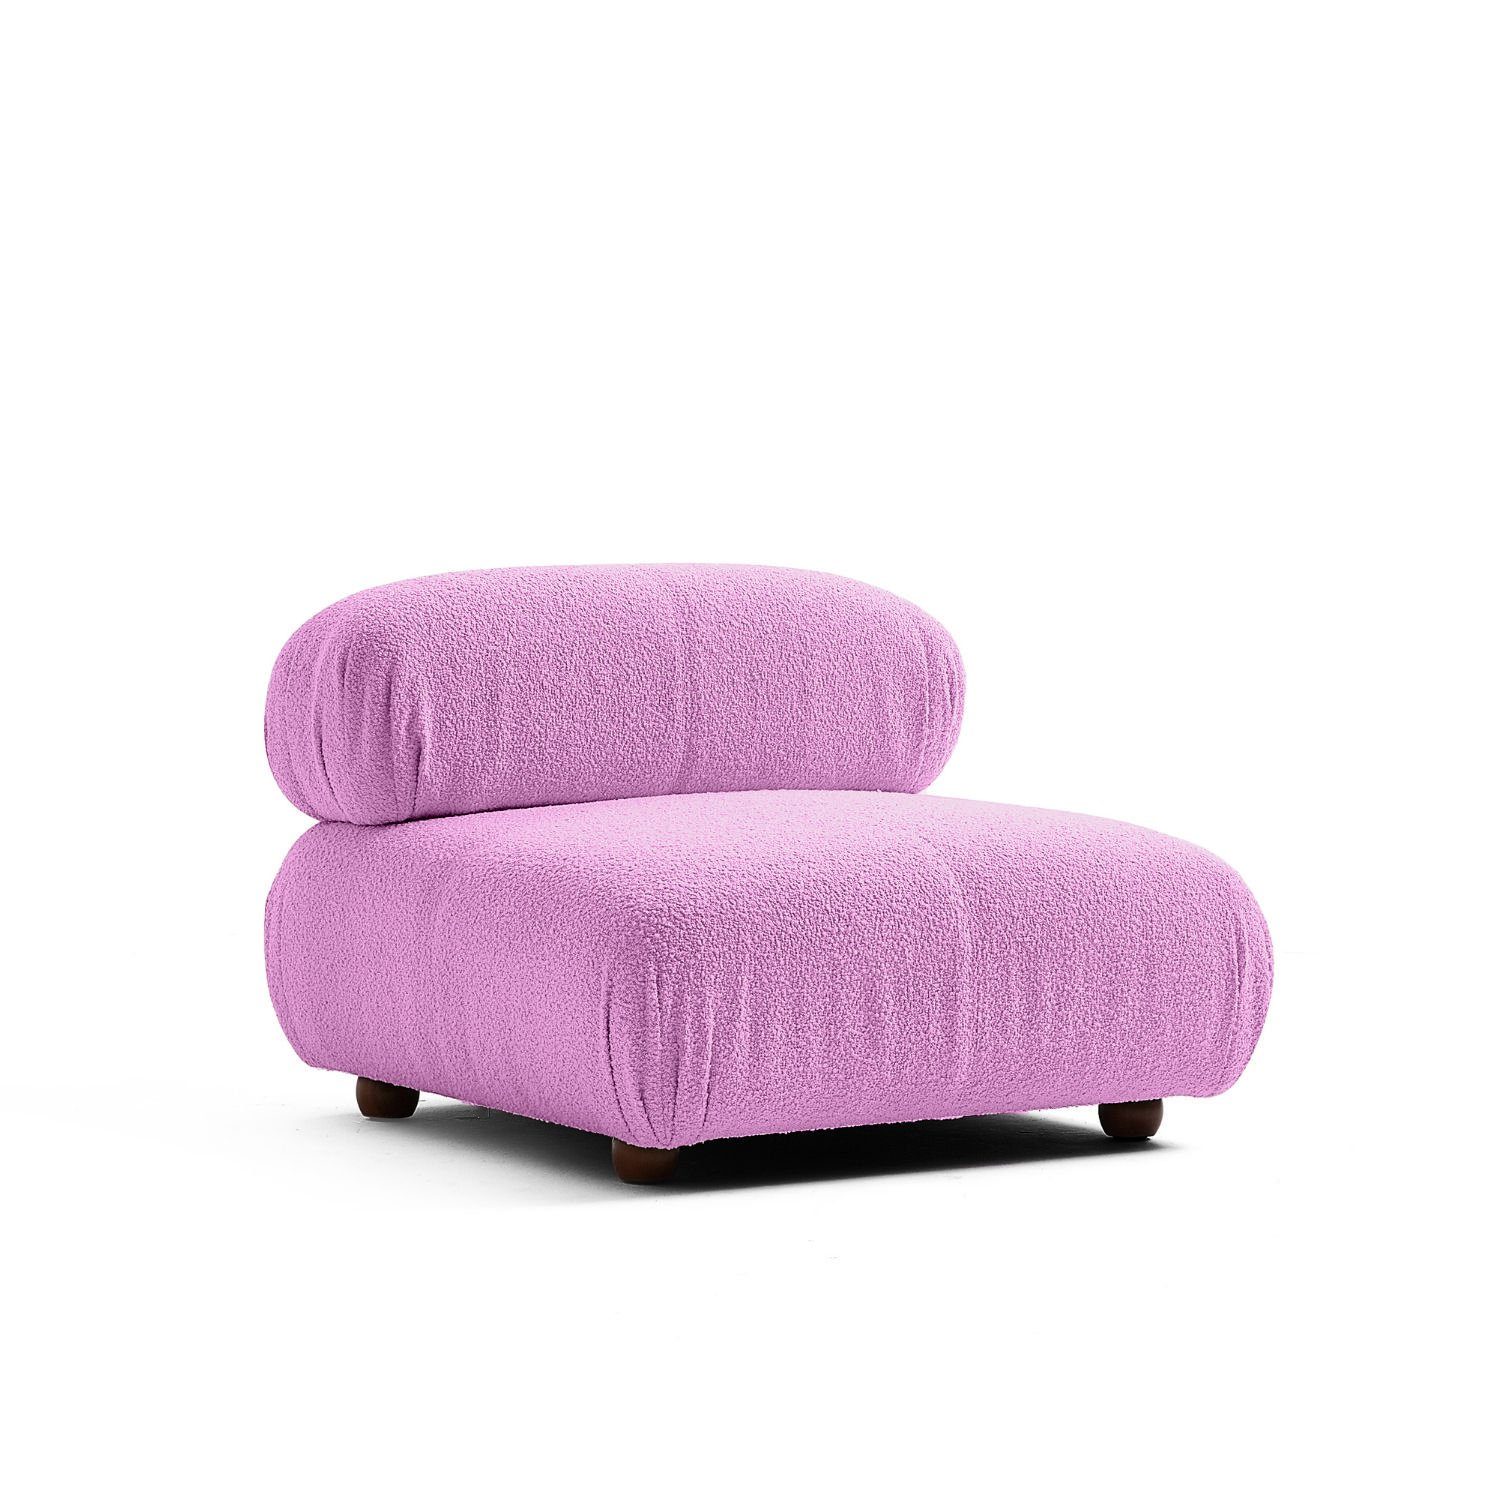 Touch me Sofa Knuffiges Sitzmöbel neueste Generation aus Komfortschaum Grau-Lieferung und Aufbau im Preis enthalten!